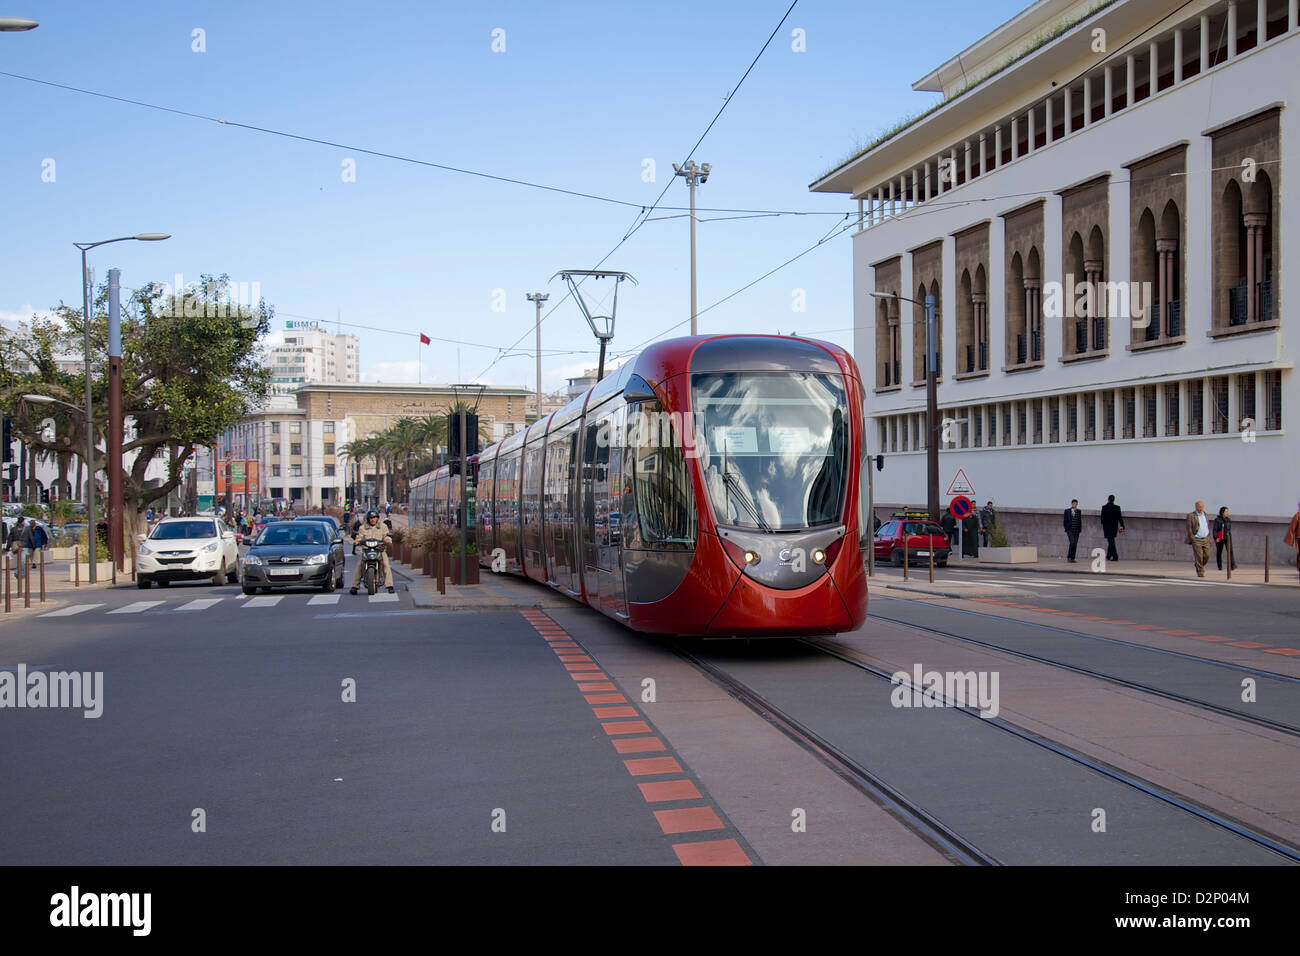 Le tramway moderne rouge dans les rues de Casablanca, Maroc Banque D'Images